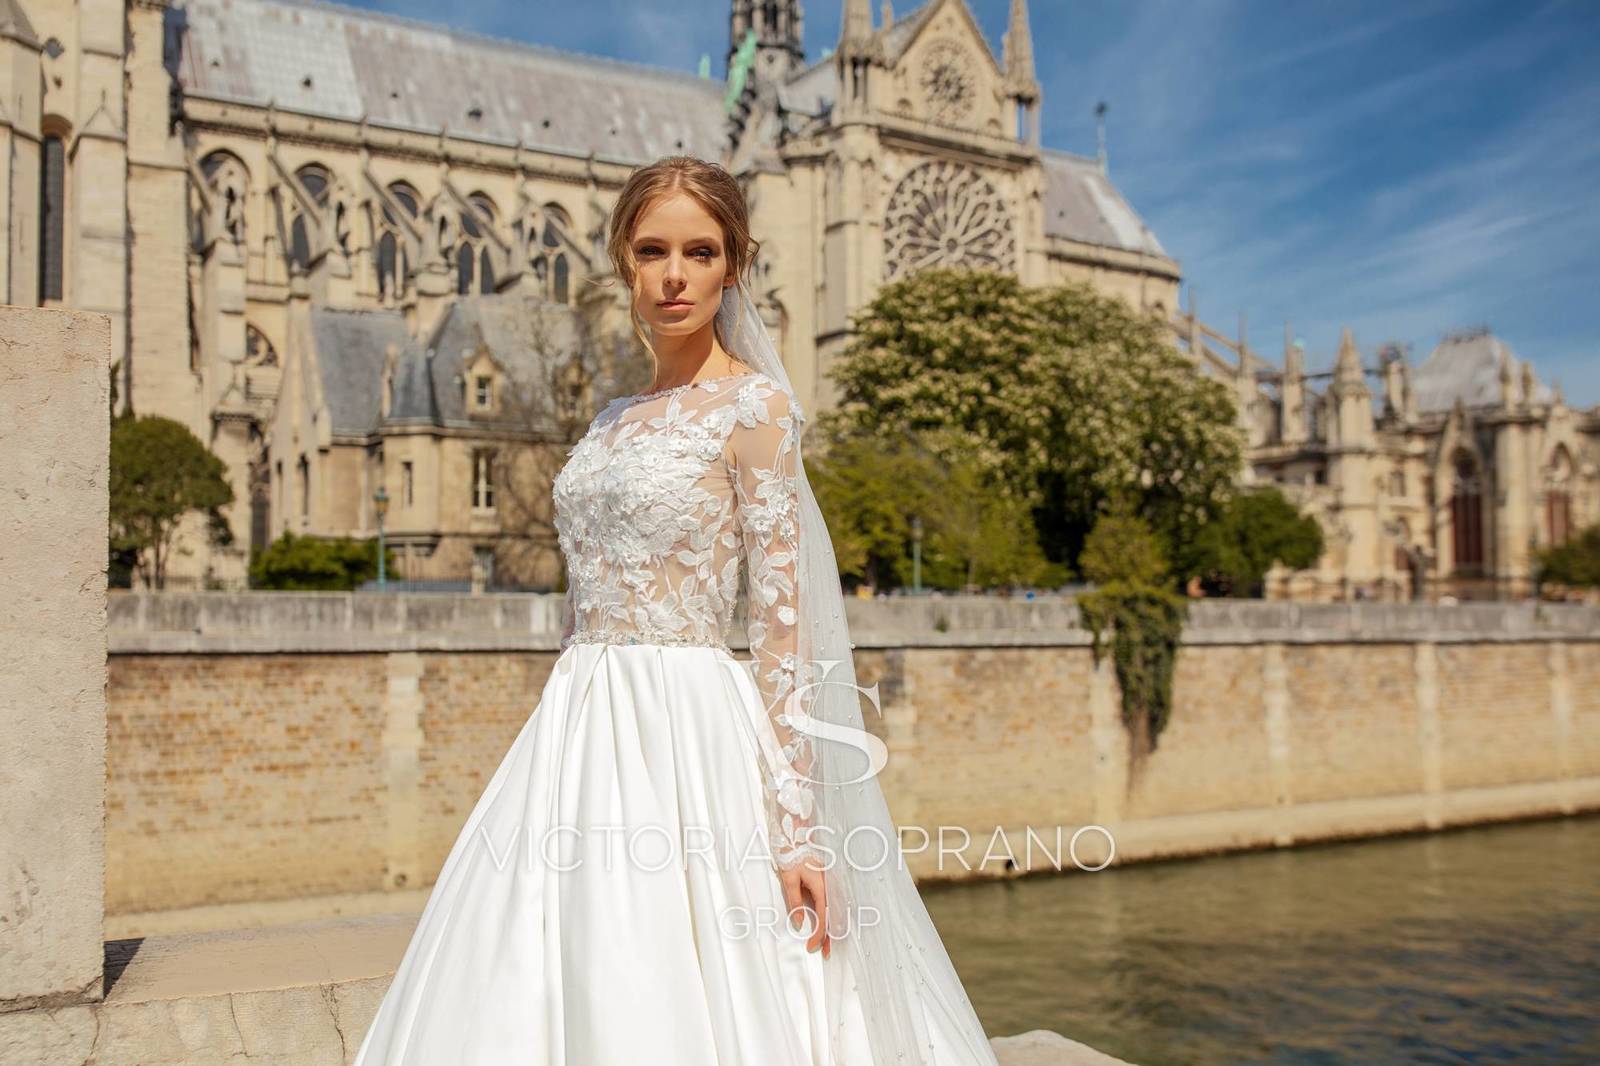 В поисках свадебного платья мечты: новая коллекция Victoria Soprano